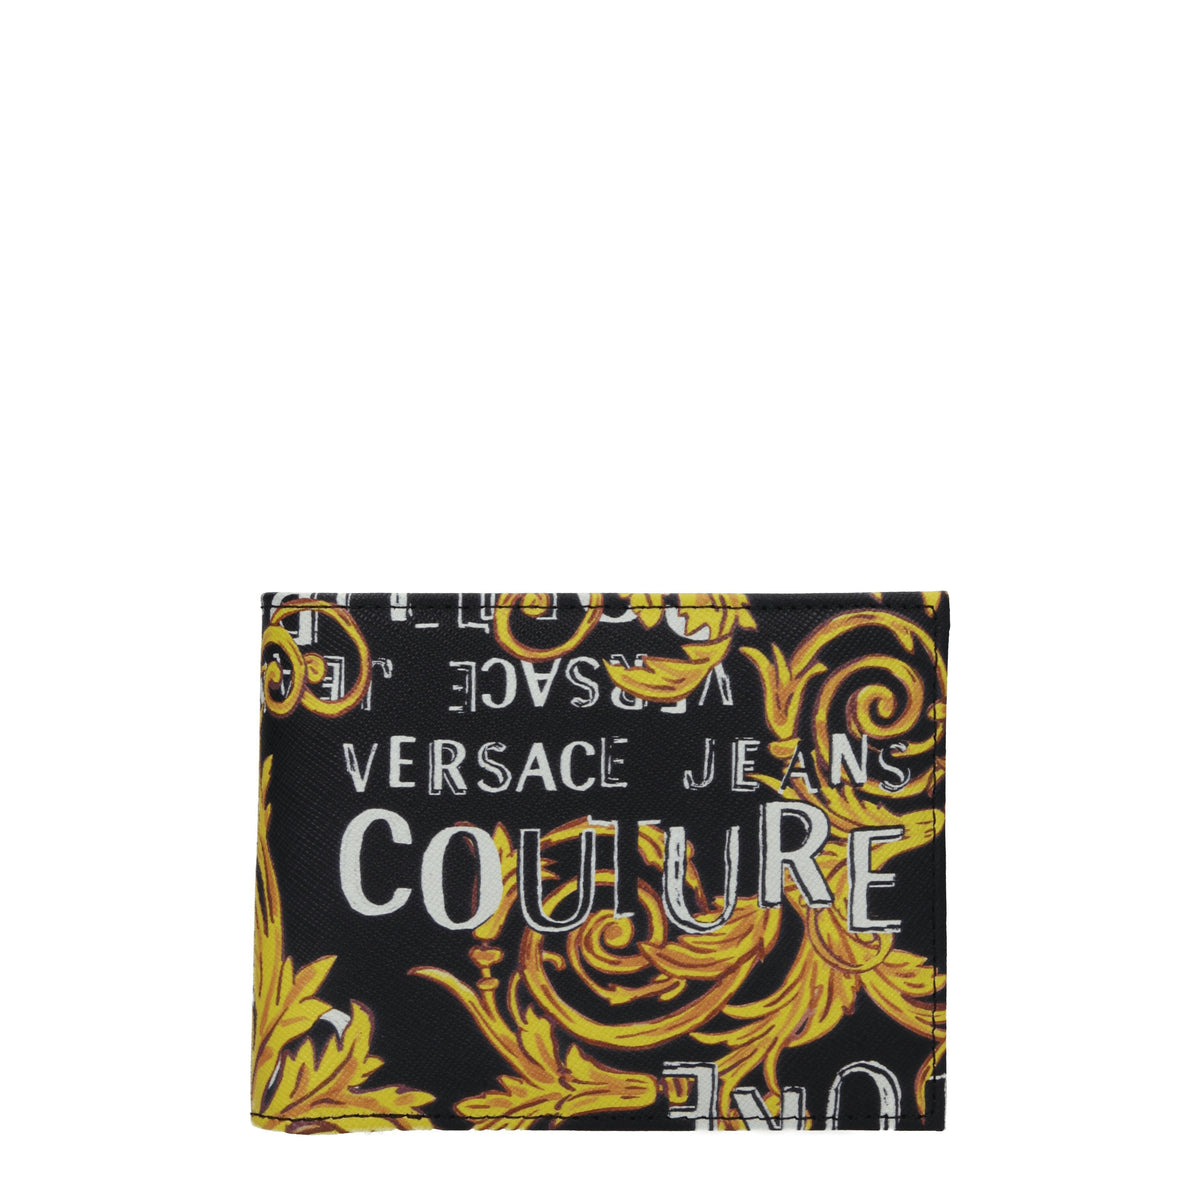 Versace Jeans Portafogli couture Uomo Poliuretano Nero Oro